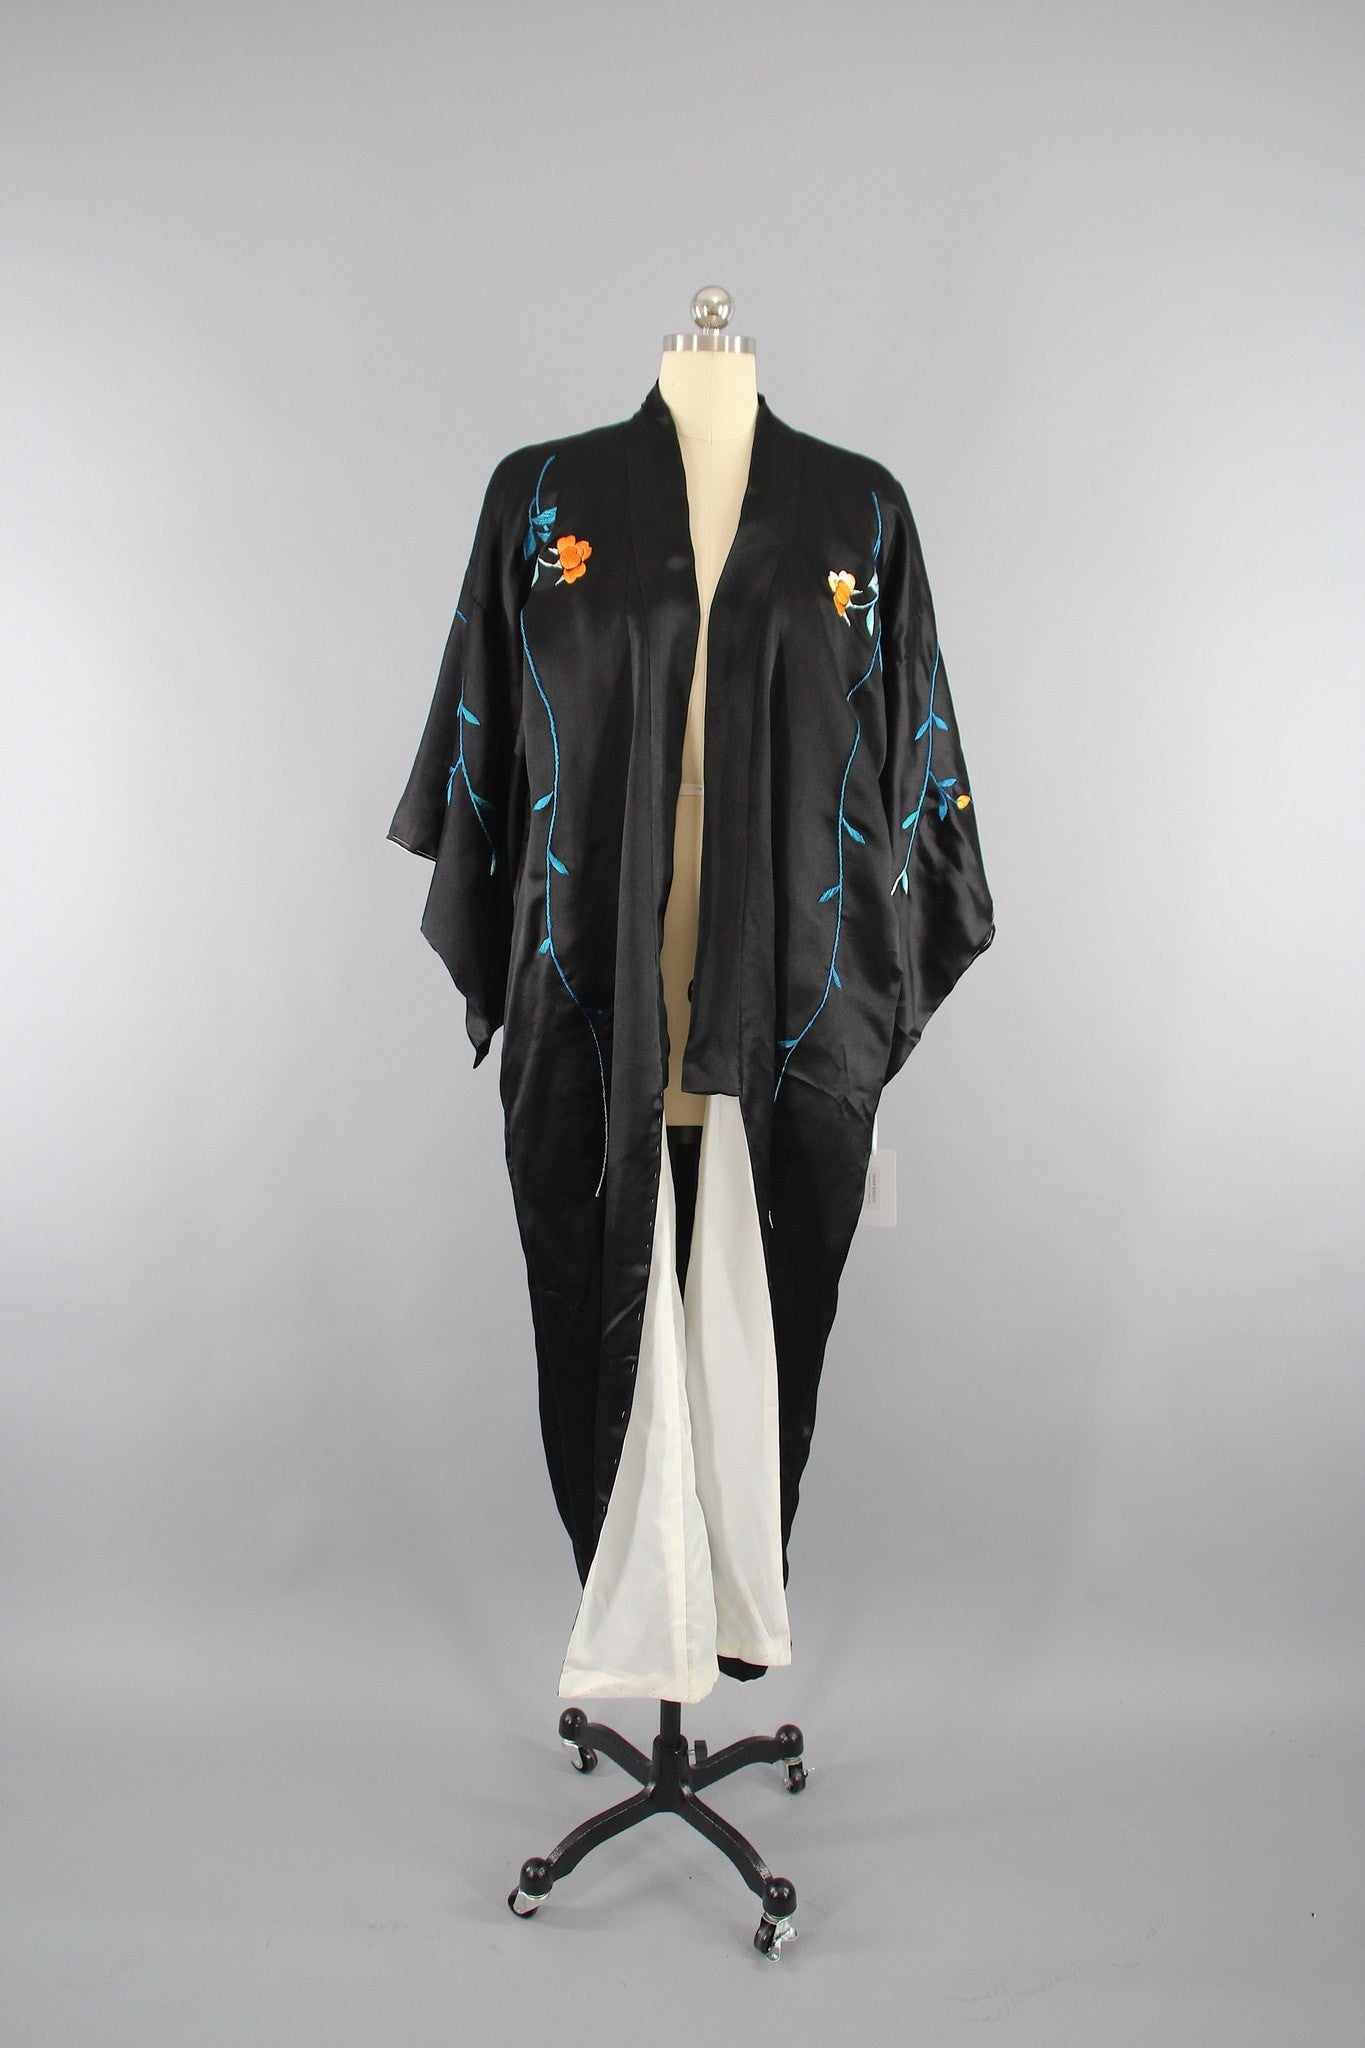 1930s Vintage Black Silk Satin Embroidered Kimono Robe - ThisBlueBird